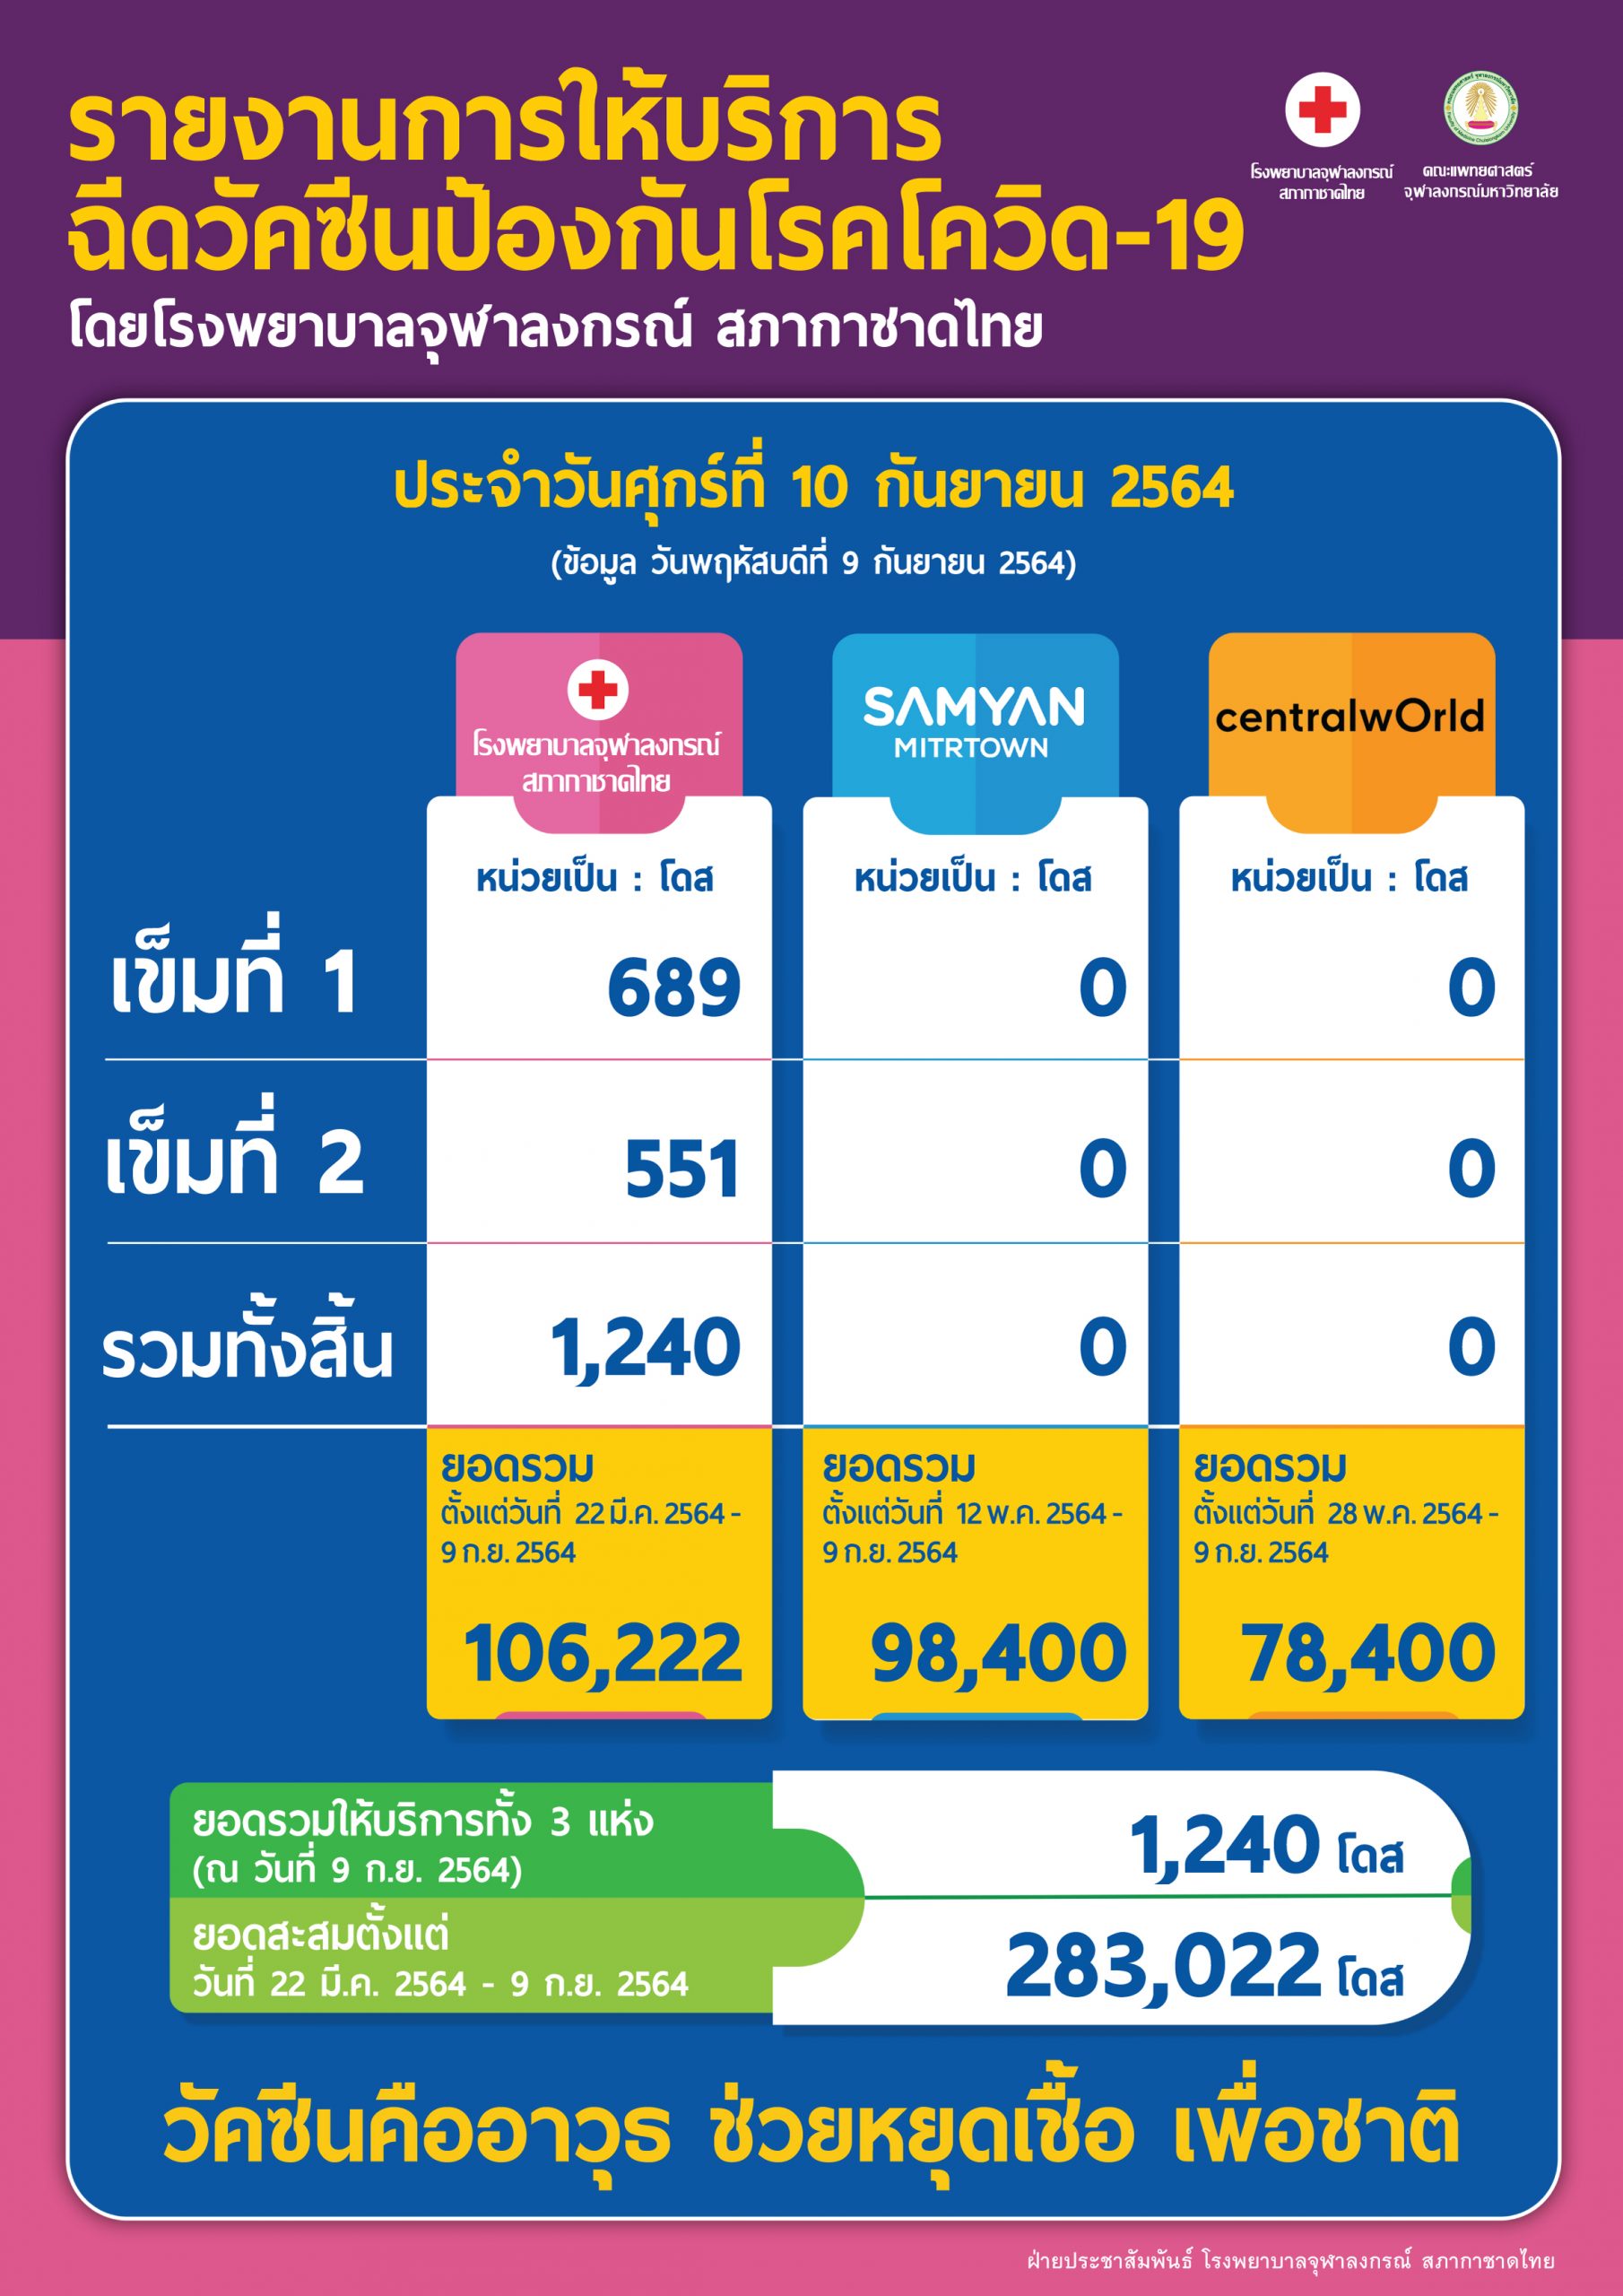 รายงานการให้บริการฉีดวัคซีนป้องกันโรคโควิด-19 โดยโรงพยาบาลจุฬาลงกรณ์ สภากาชาดไทย ประจำวันศุกร์ที่ 10 กันยายน 2564